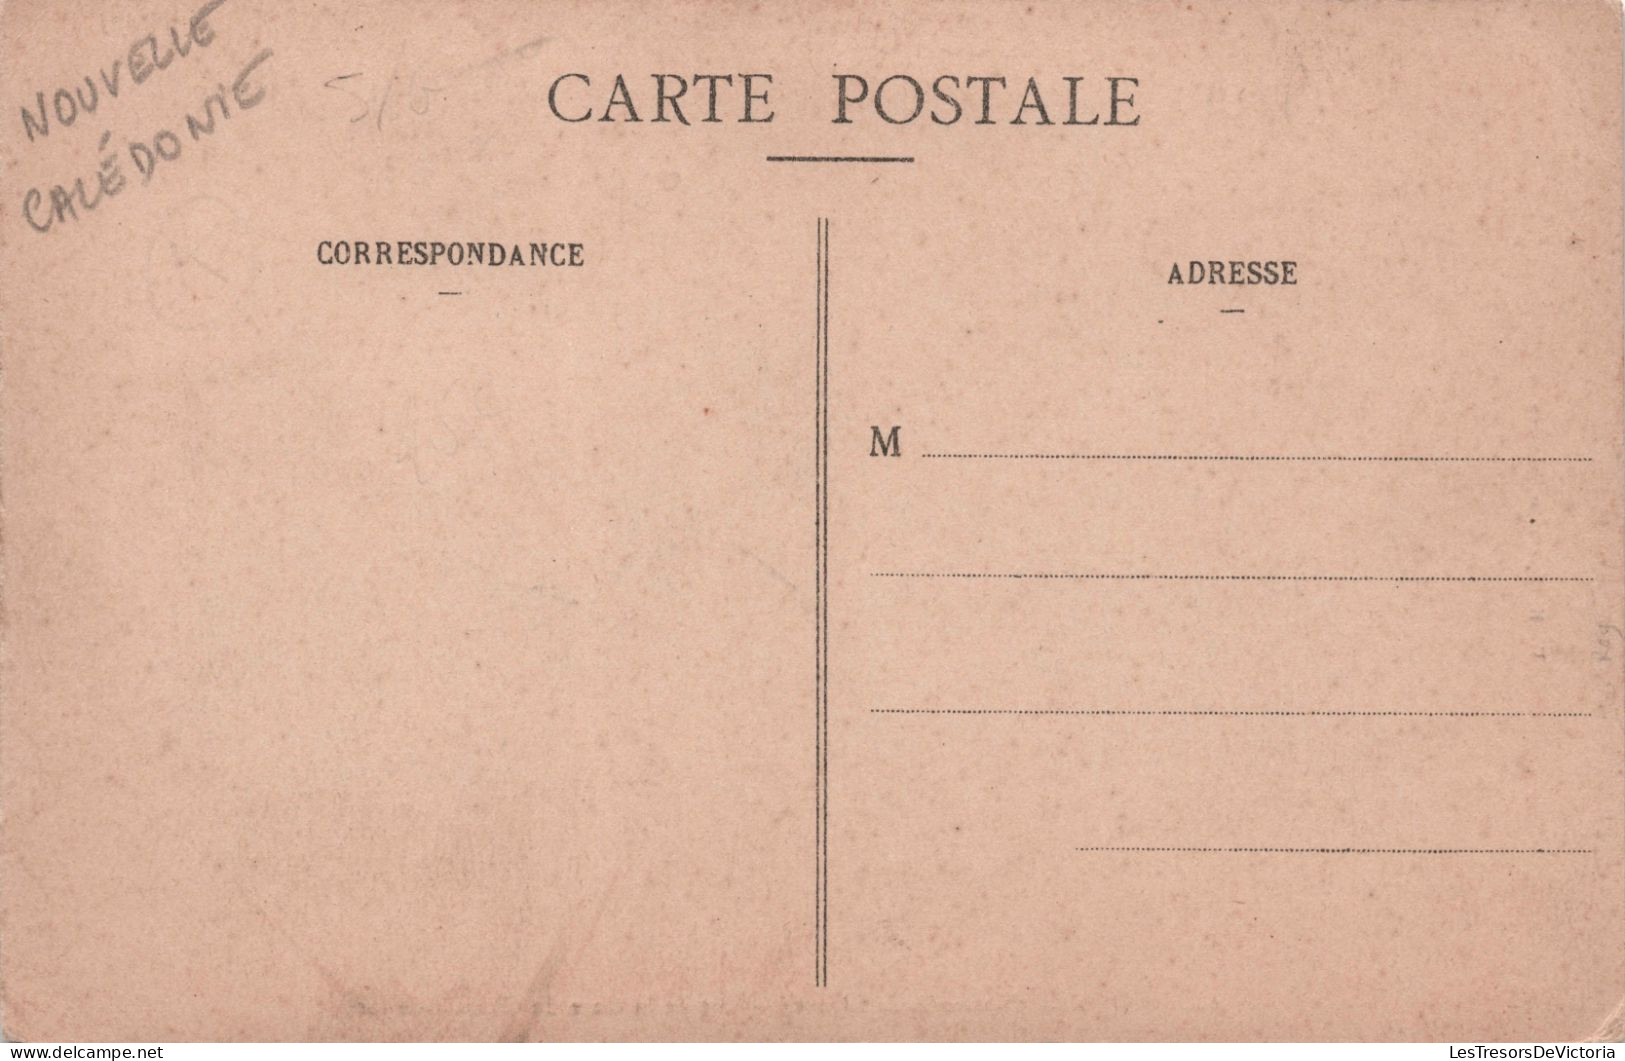 NOUVELLE CALEDONIE - Nouméa - Vue De La Gare Du Chemin De Fer - W H C Editeur - Carte Postale Ancienne - New Caledonia